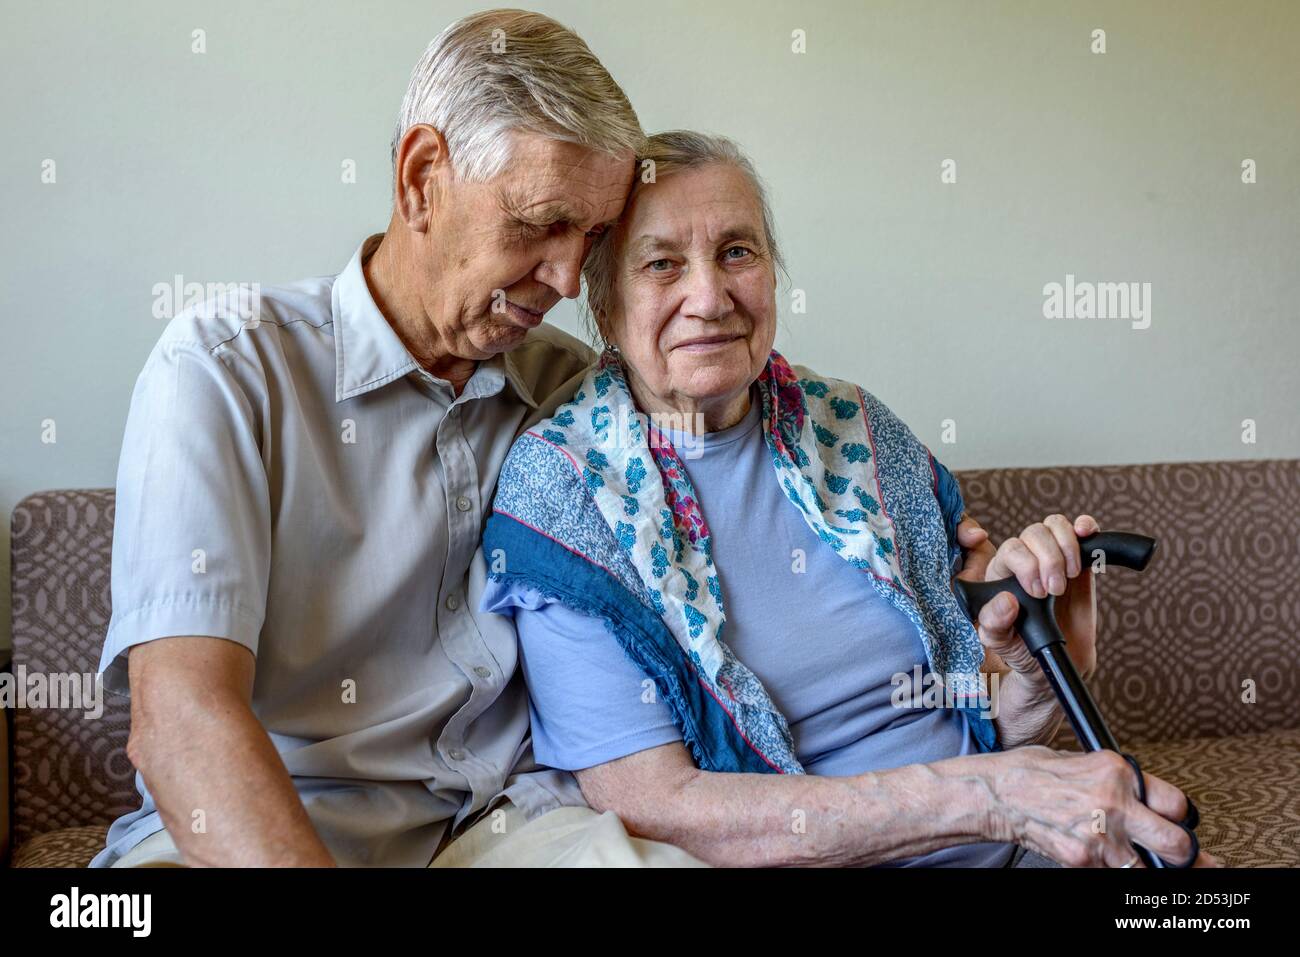 Coppia anziana, l'anziano abbraccia dolcemente sua moglie. Fidarsi di relazioni familiari, cura, amore. Foto Stock